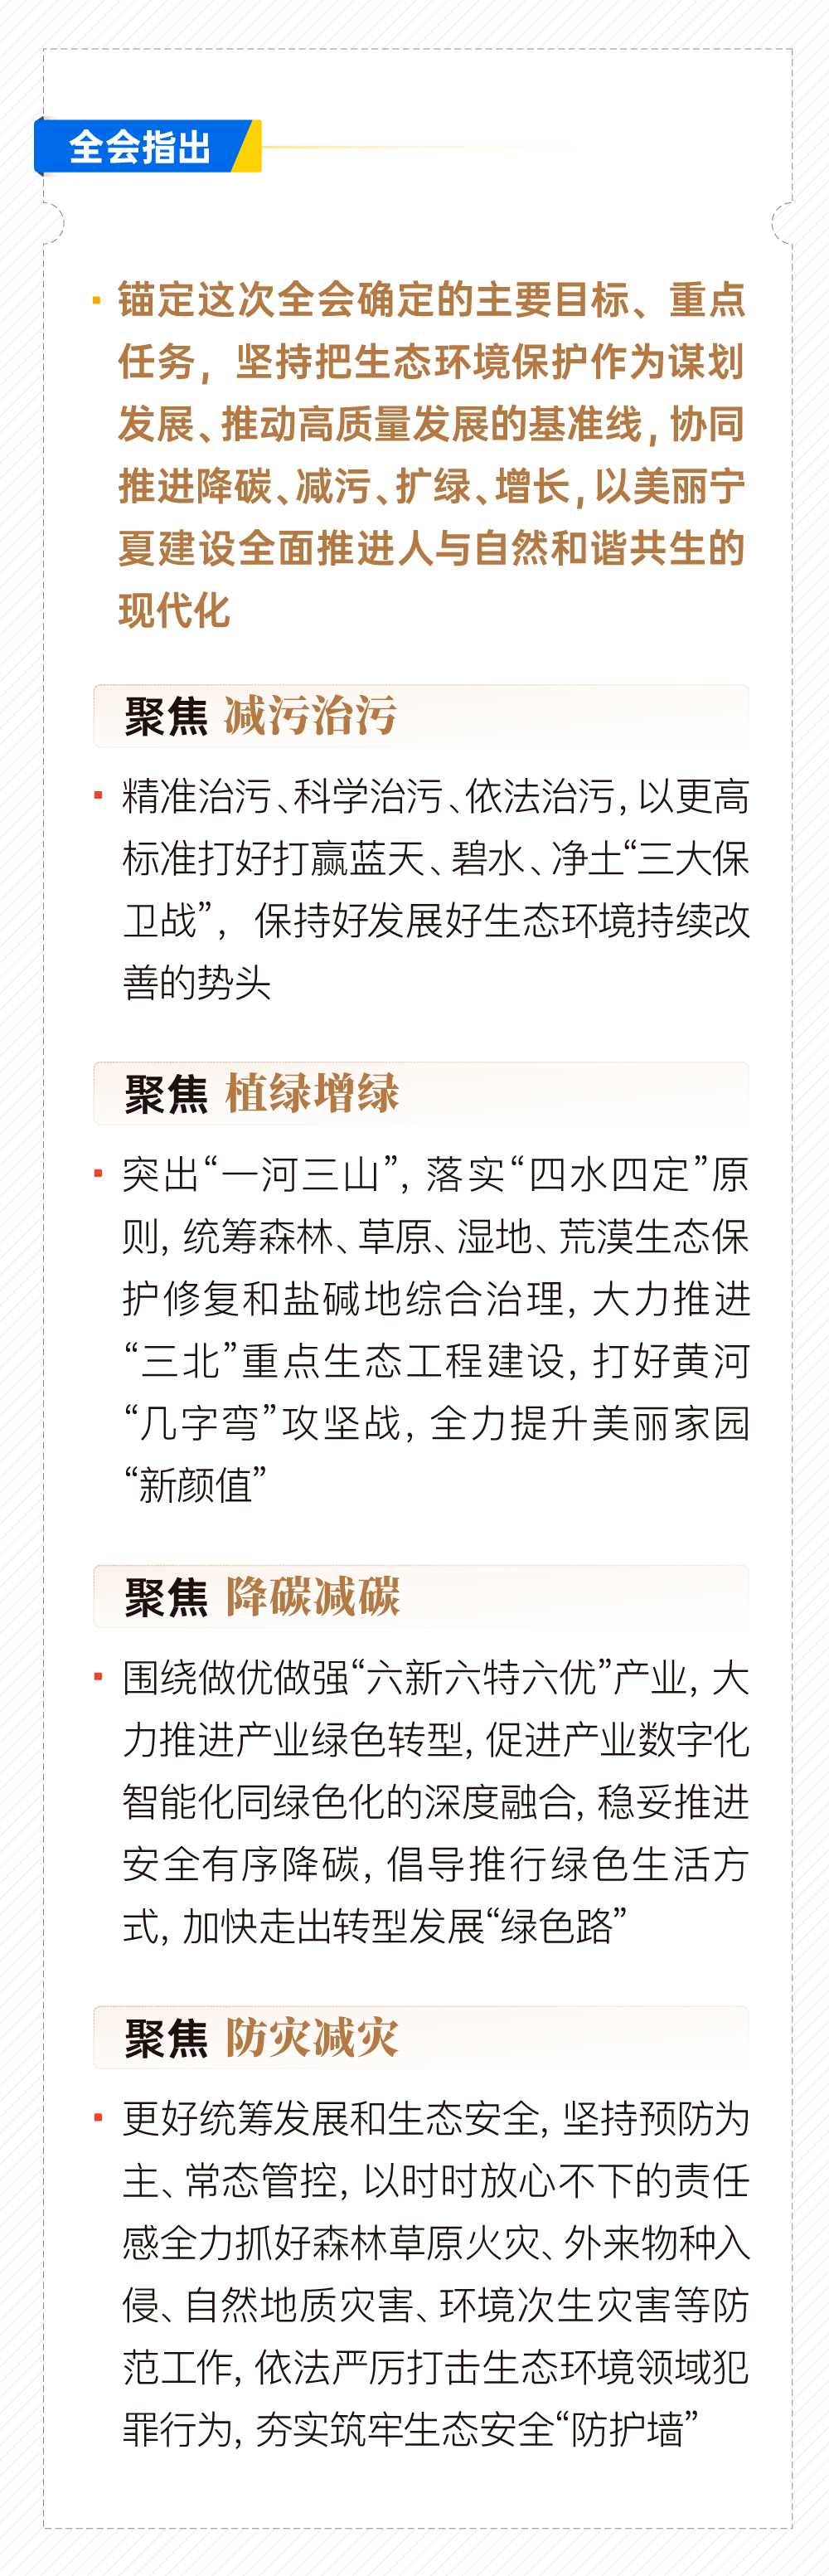 ▌来源：宁夏日报客户端